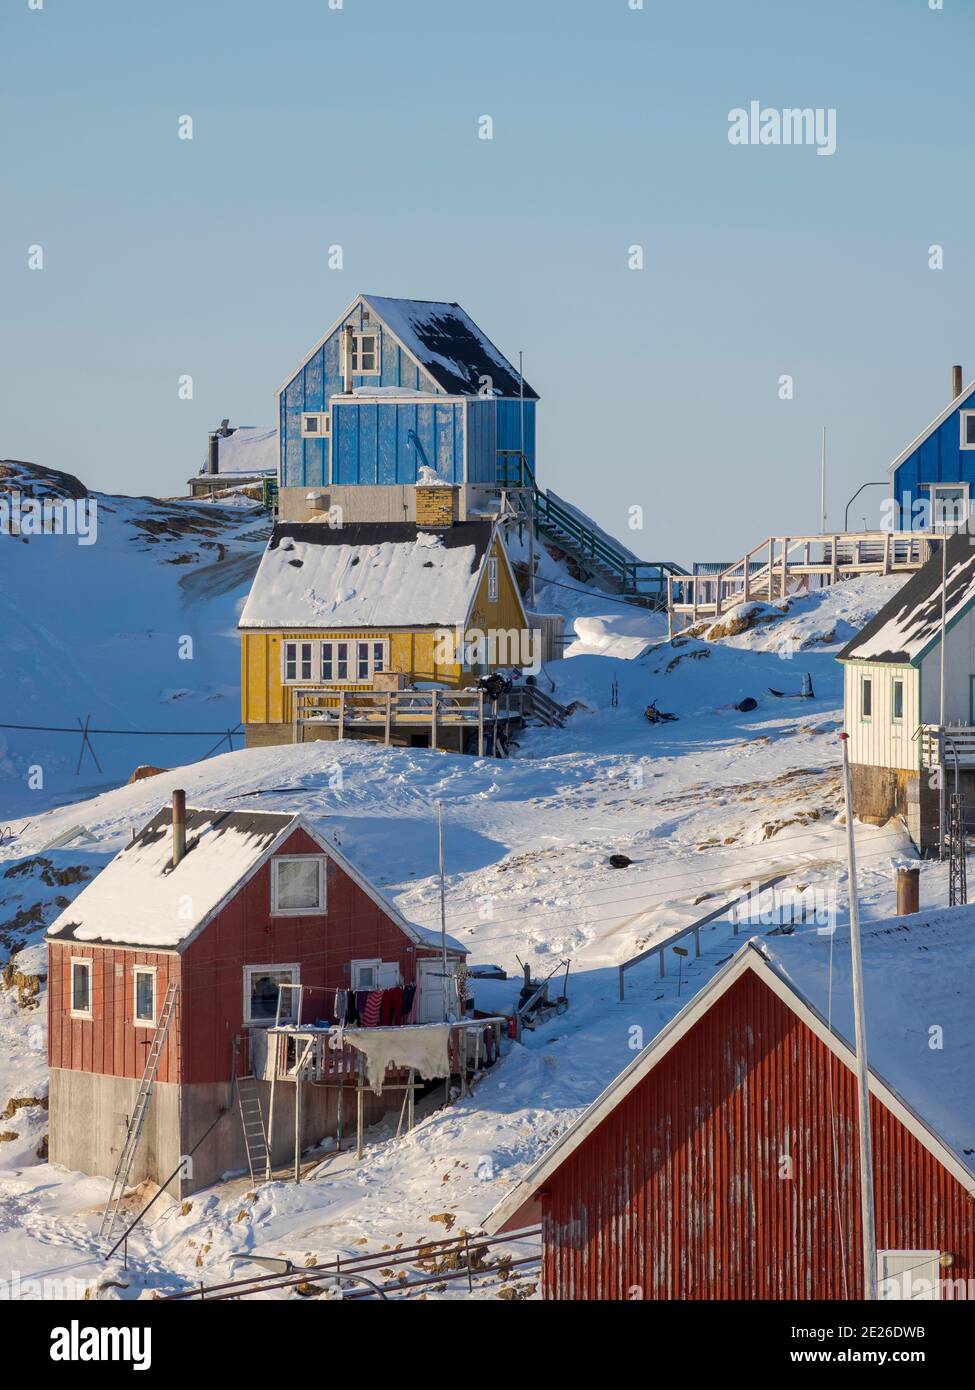 Hivernent dans la ville d'Upernavik, au nord du Groenland, sur les rives de la baie de Baffin. Amérique , Danemark, Groenland Banque D'Images